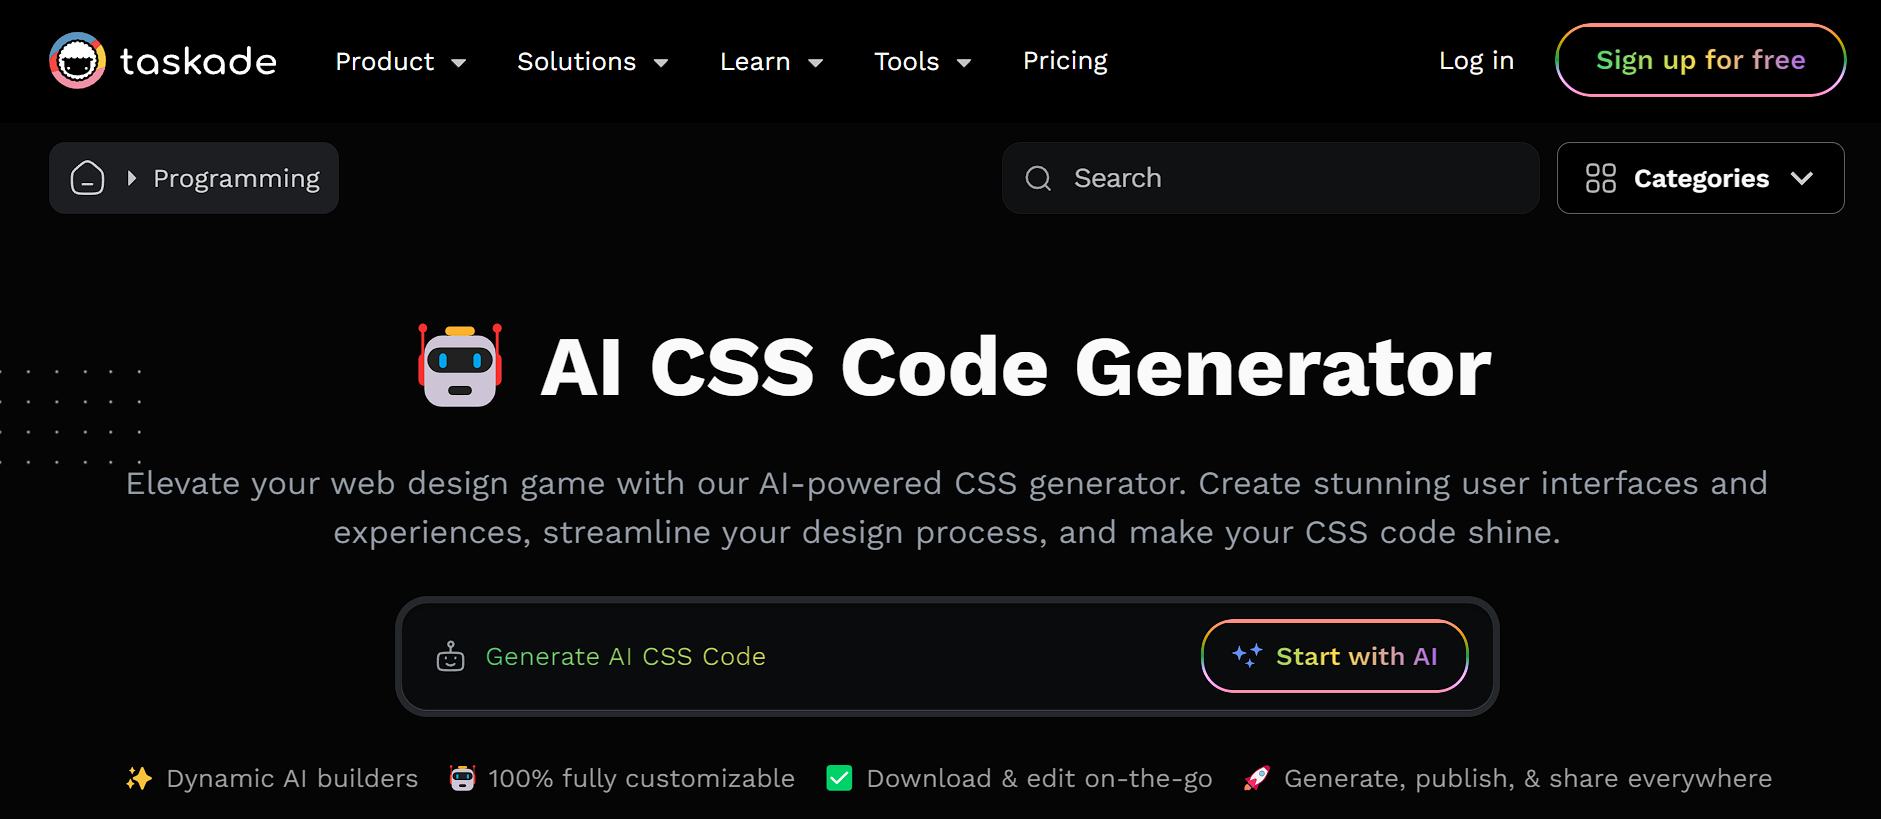 Taskade AI CSS Code Generator